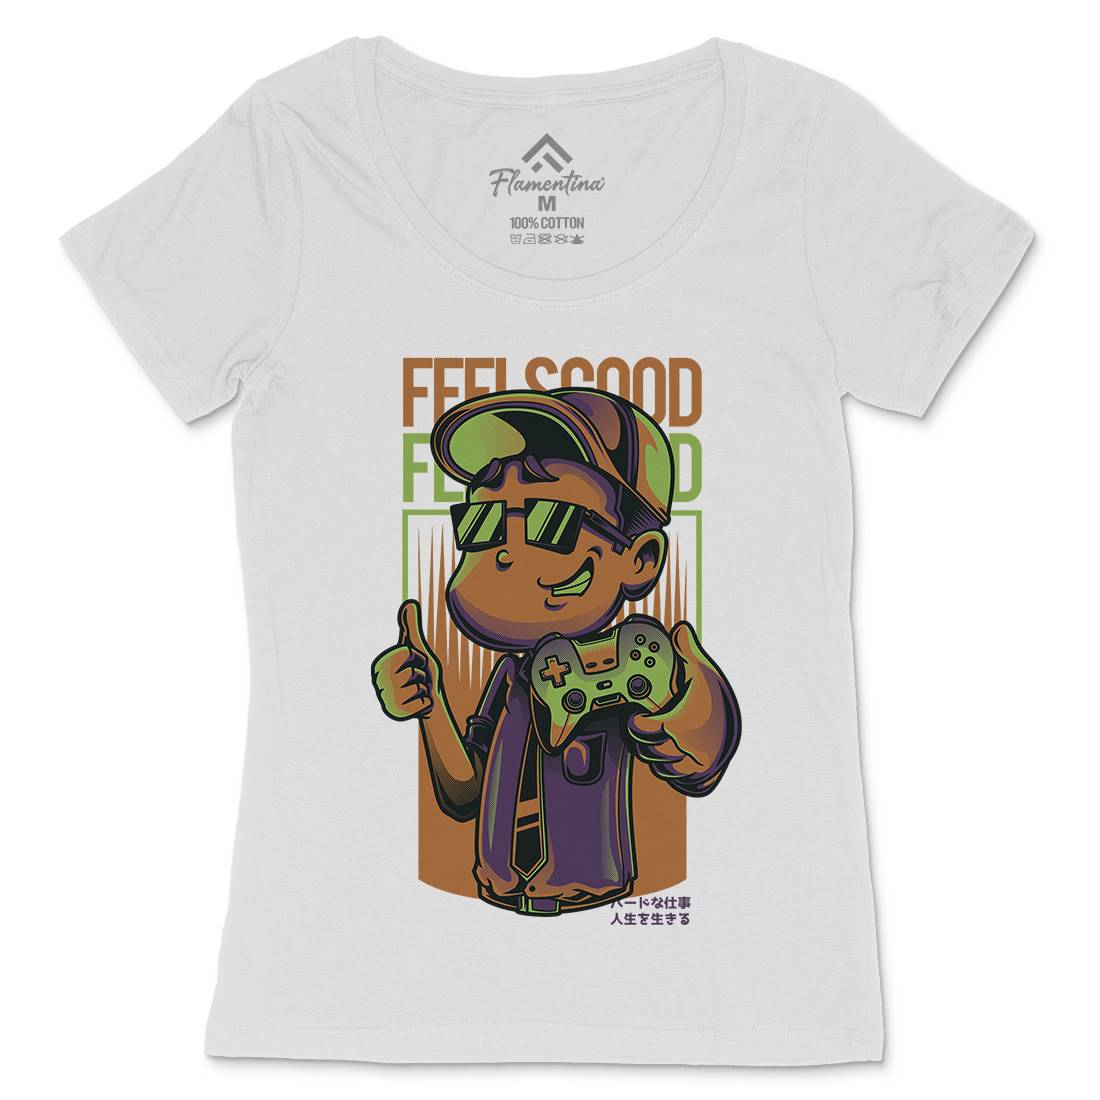 Feels Good Womens Scoop Neck T-Shirt Geek D773